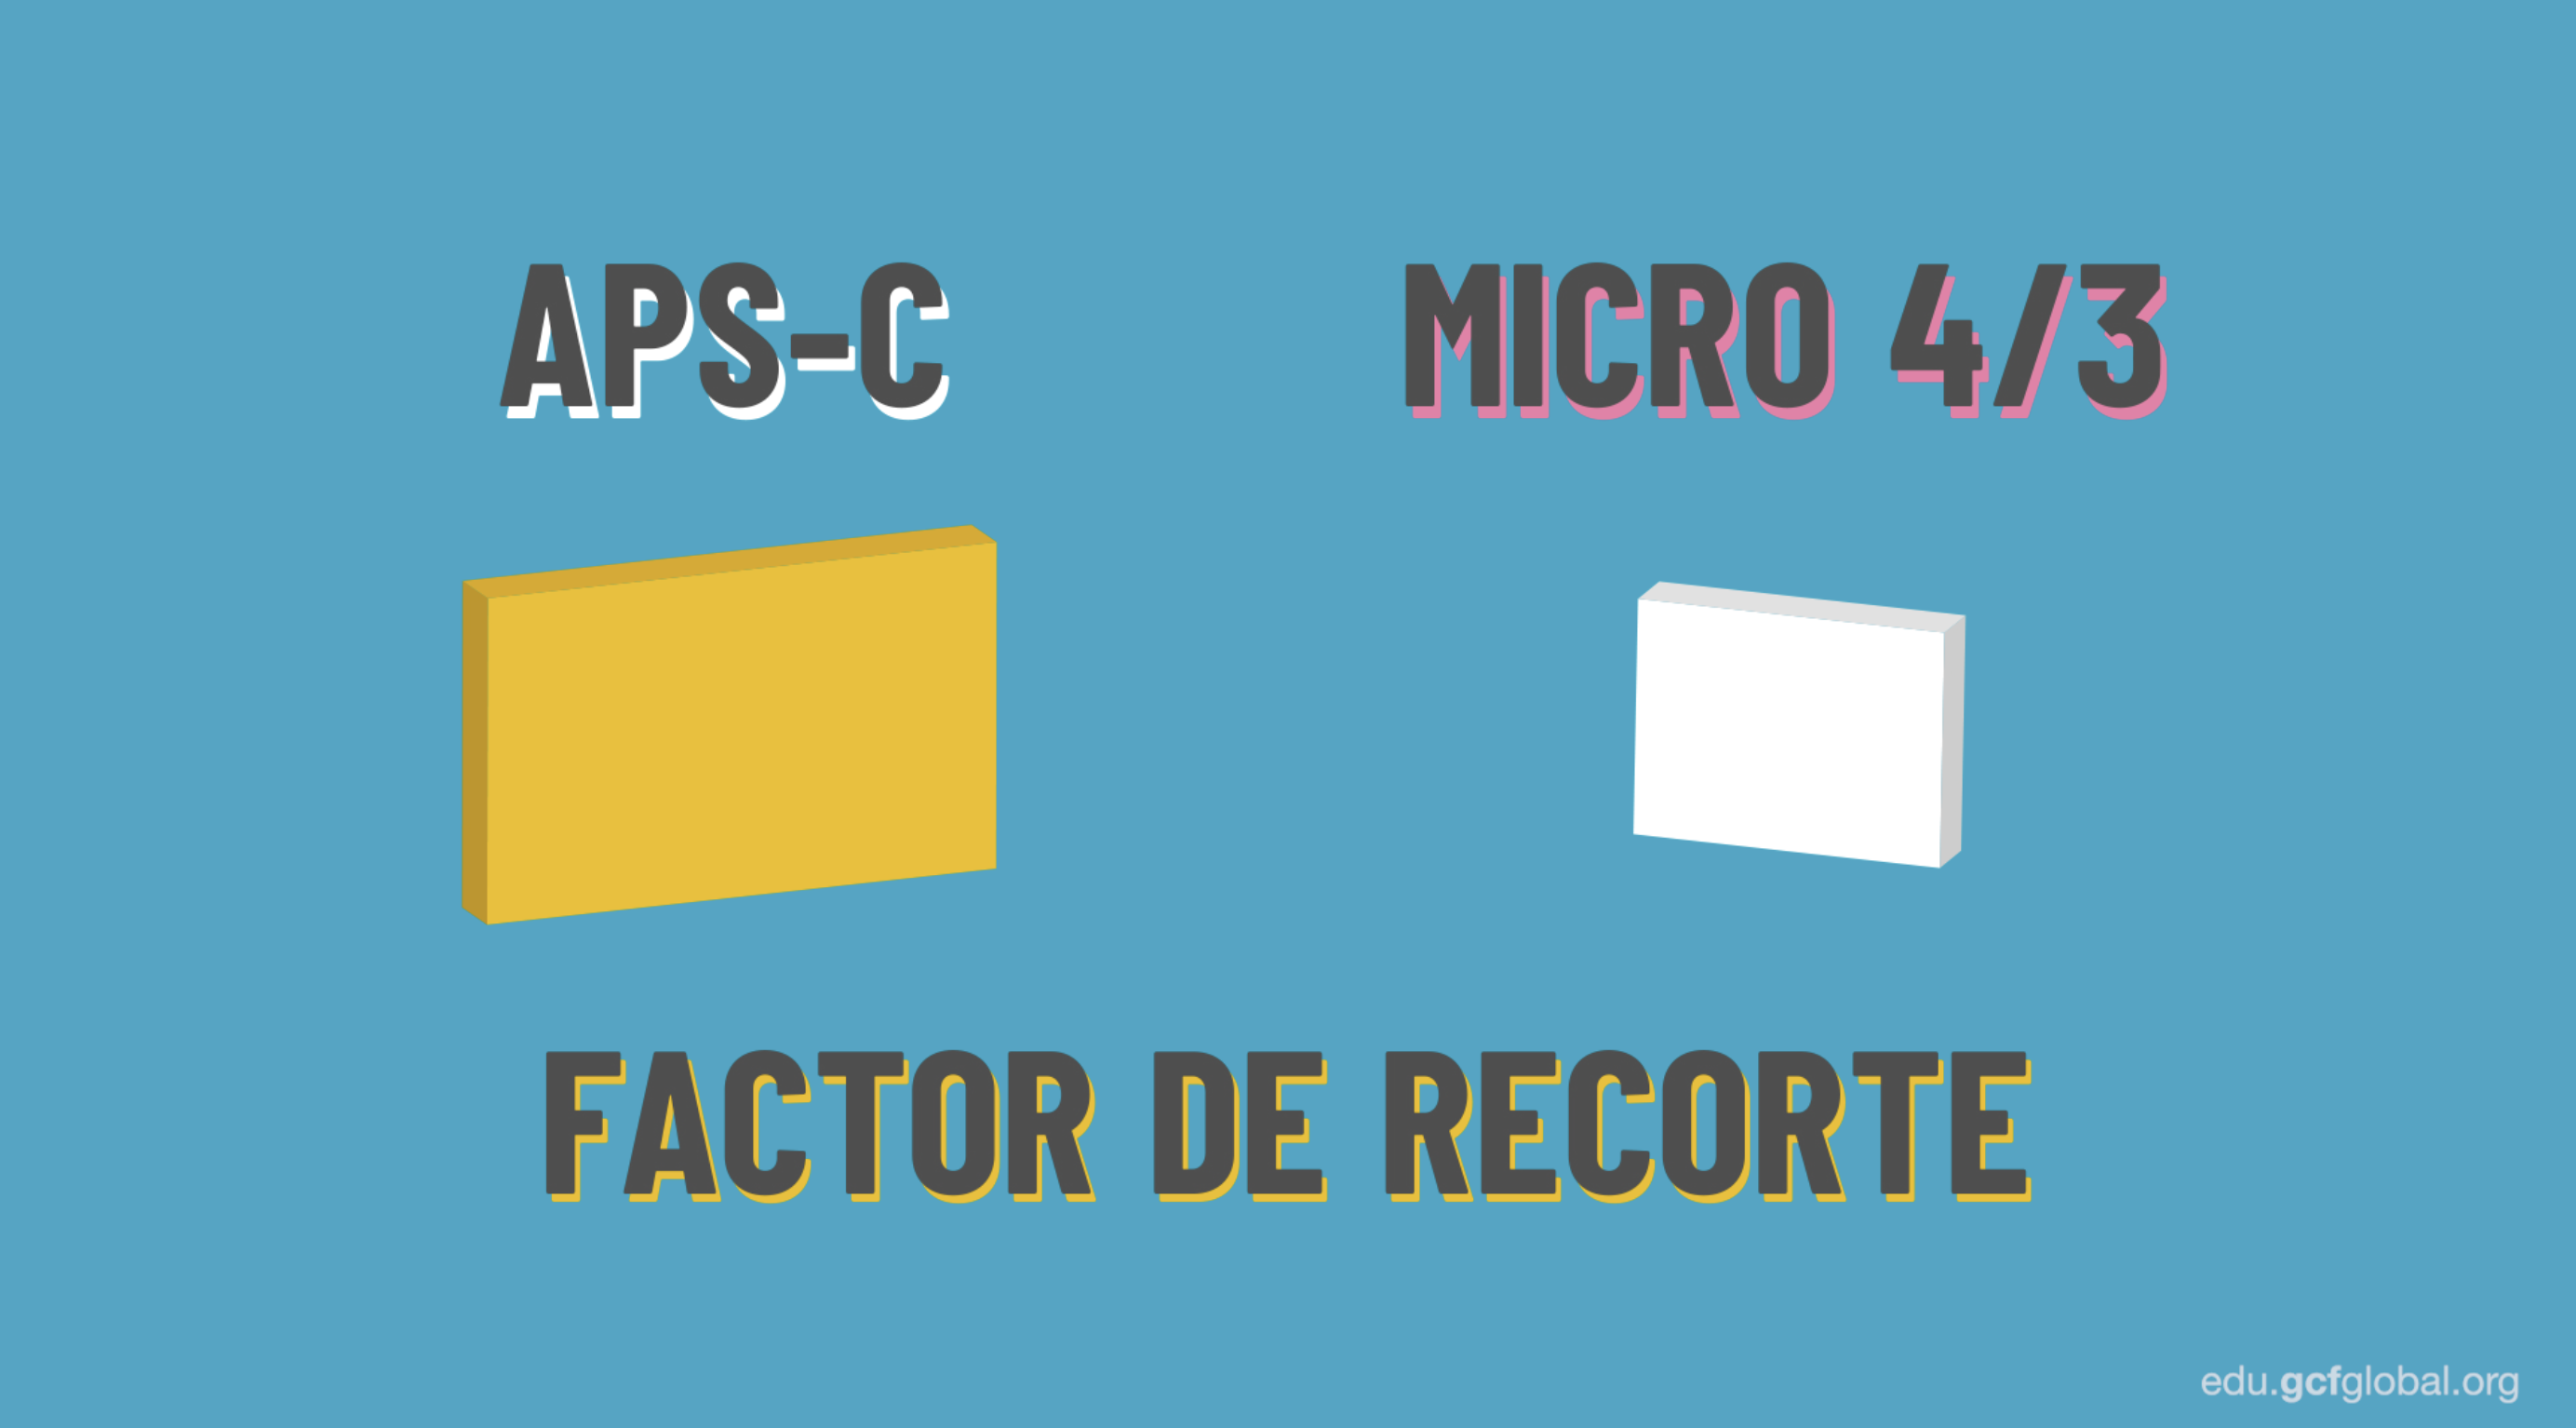 Los sensores más pequeños y livianos son los APS-C y los micro 4/3.